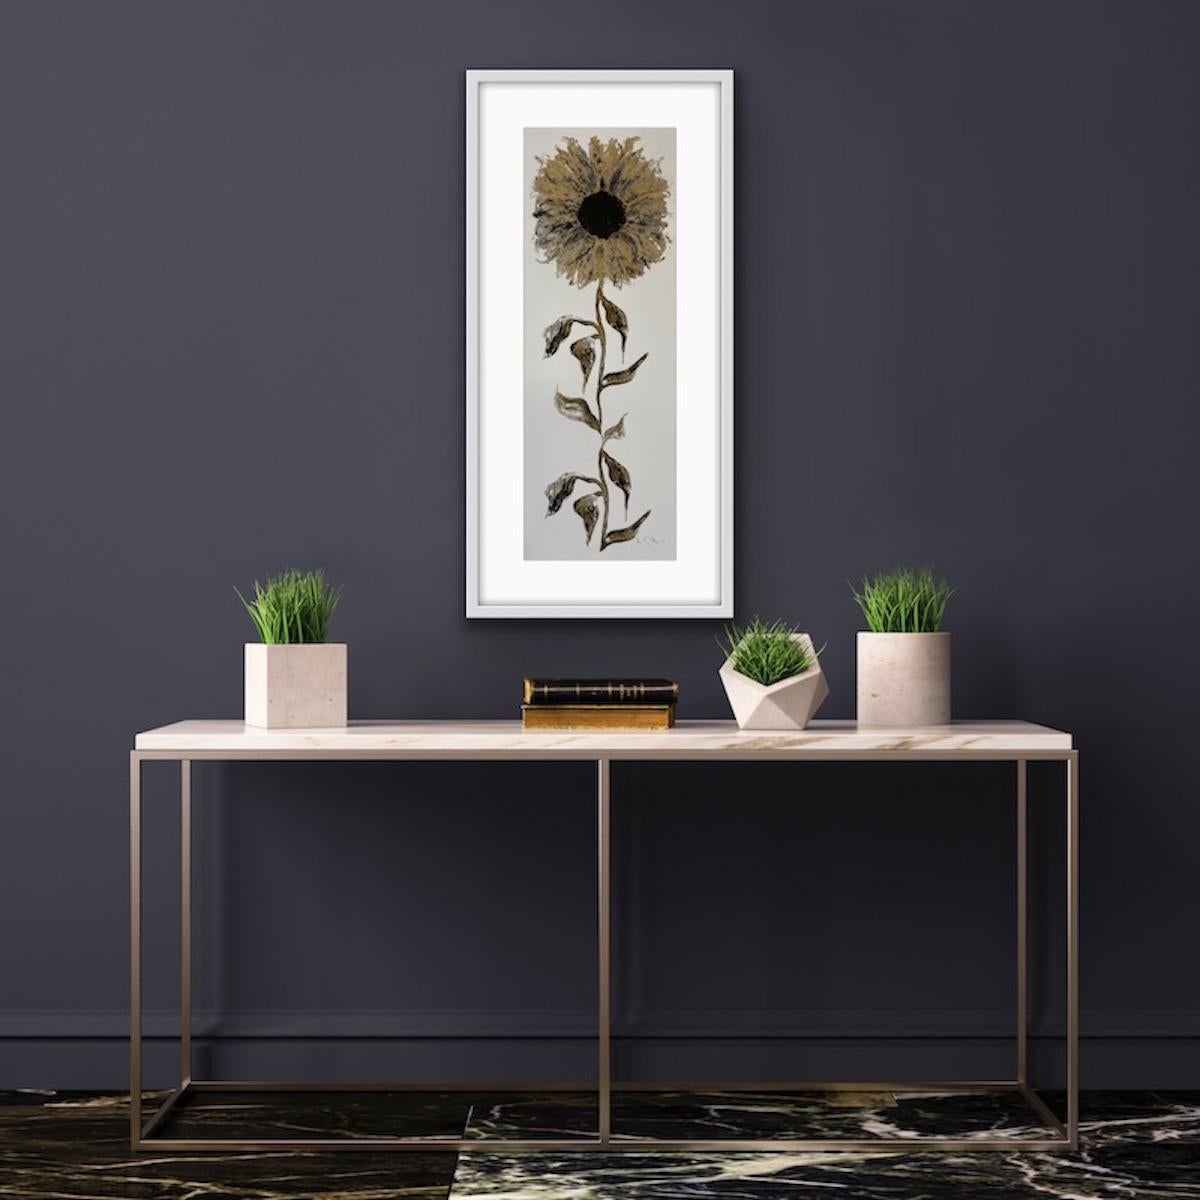 Sonnenblumen-Gold – Print von Gavin Dobson